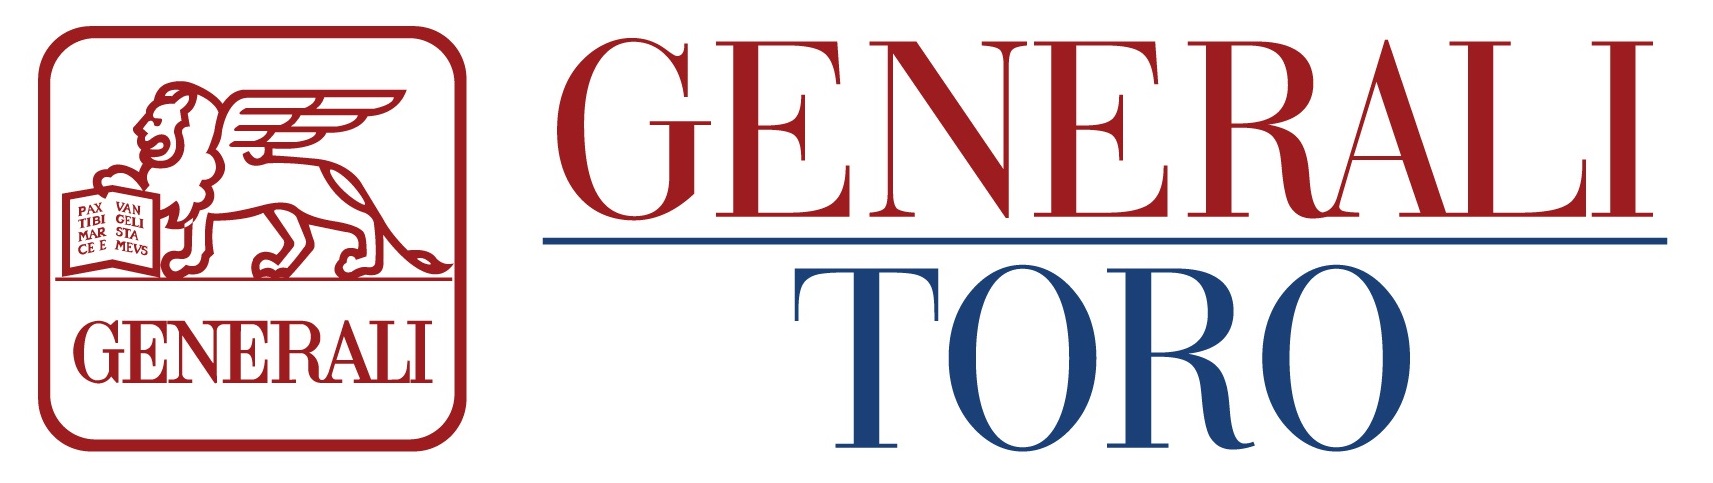 generali_toro